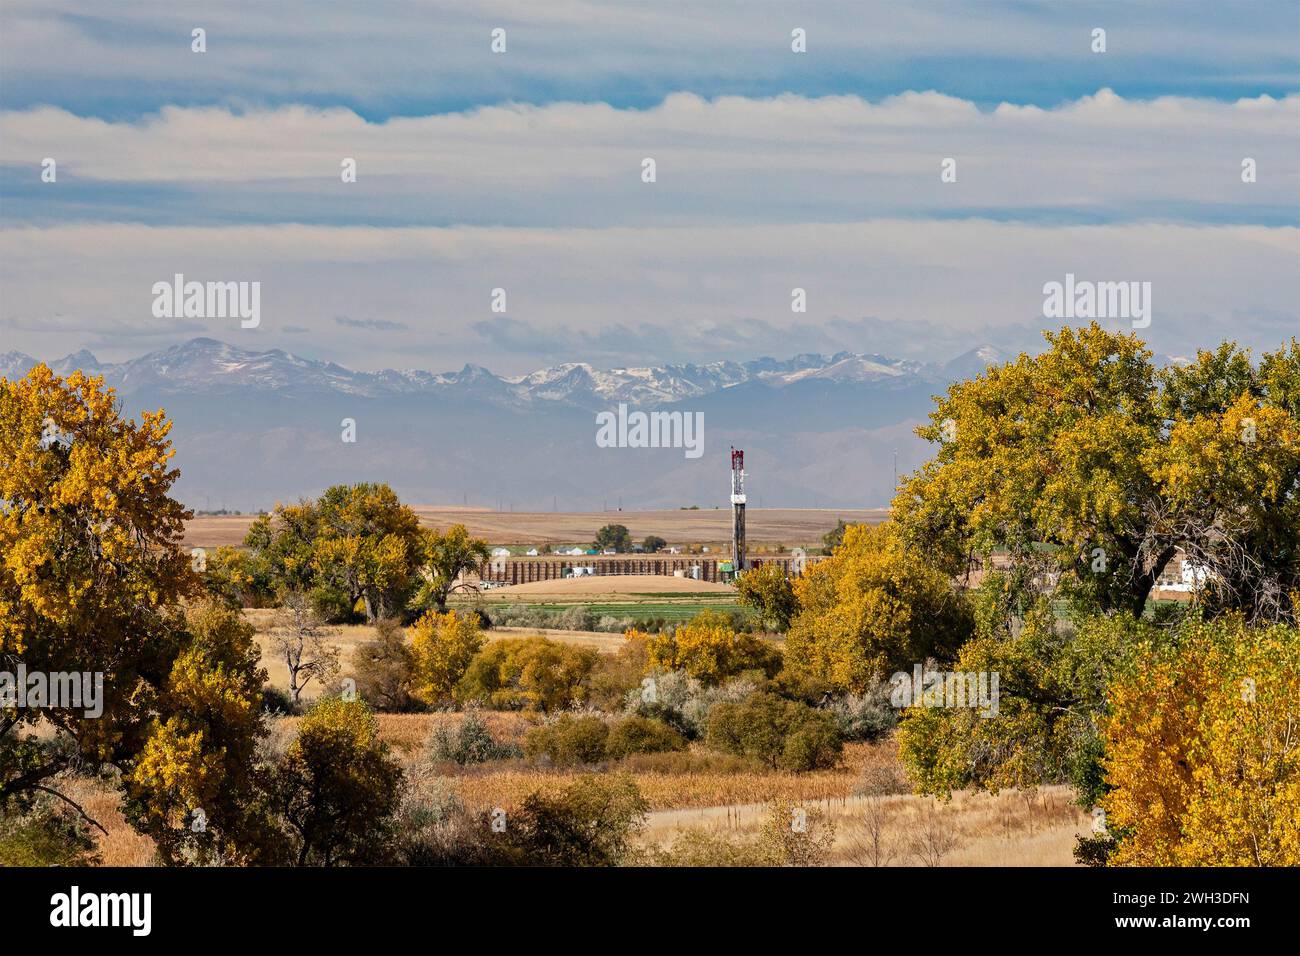 Keenesburg, Colorado - un impianto di trivellazione petrolifera sulle pianure orientali del Colorado rurale. Le Montagne Rocciose sono in lontananza. Foto Stock